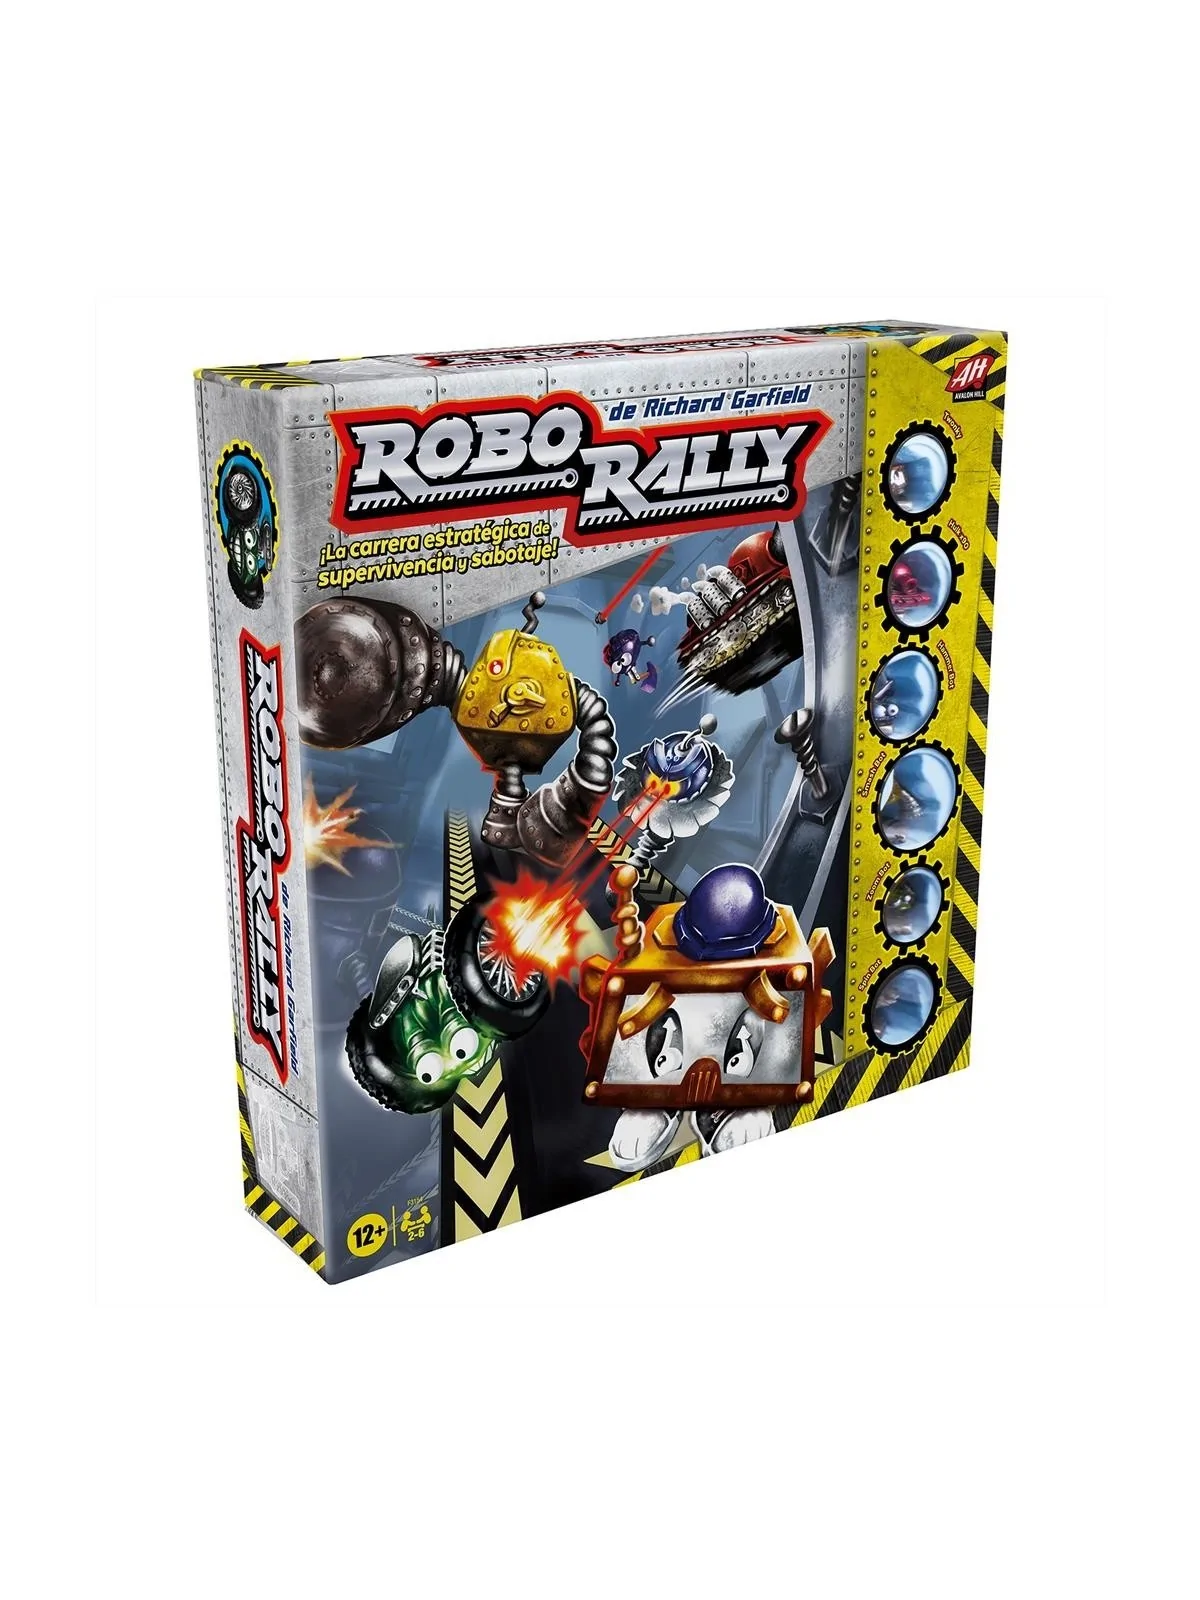 Comprar Robo Rally barato al mejor precio 40,49 € de Hasbro